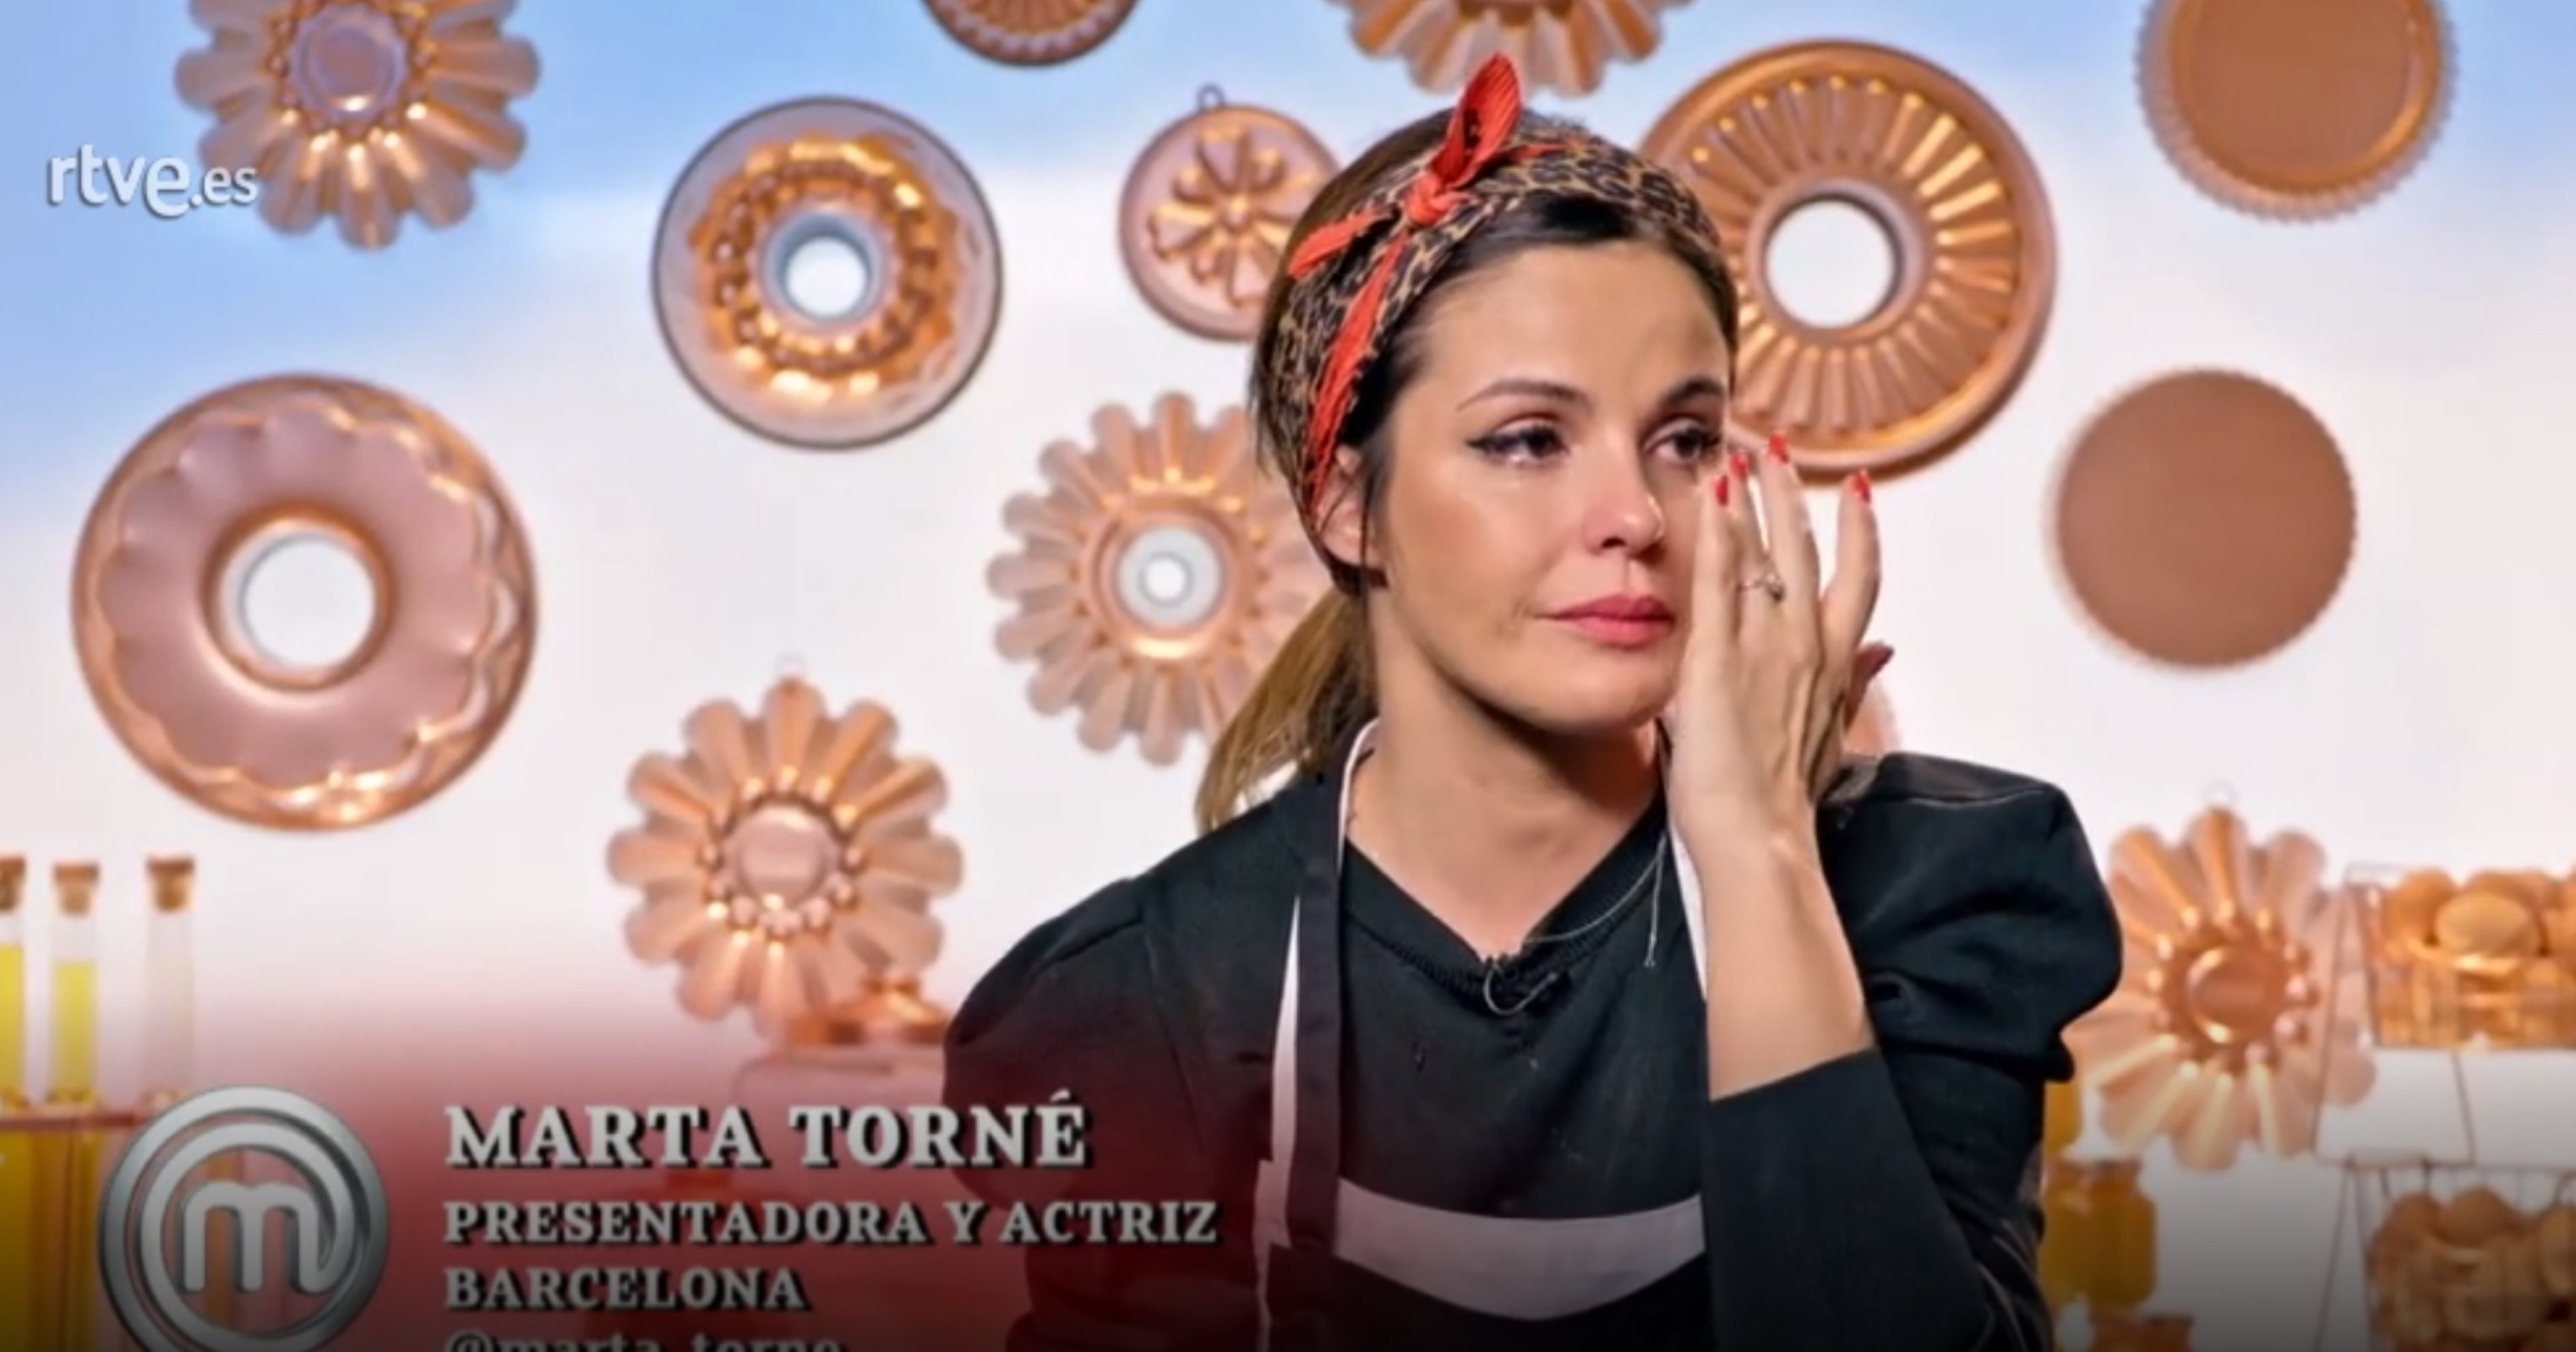 Duro testimonio de Marta Torné recordando sus inicios como actriz en Madrid